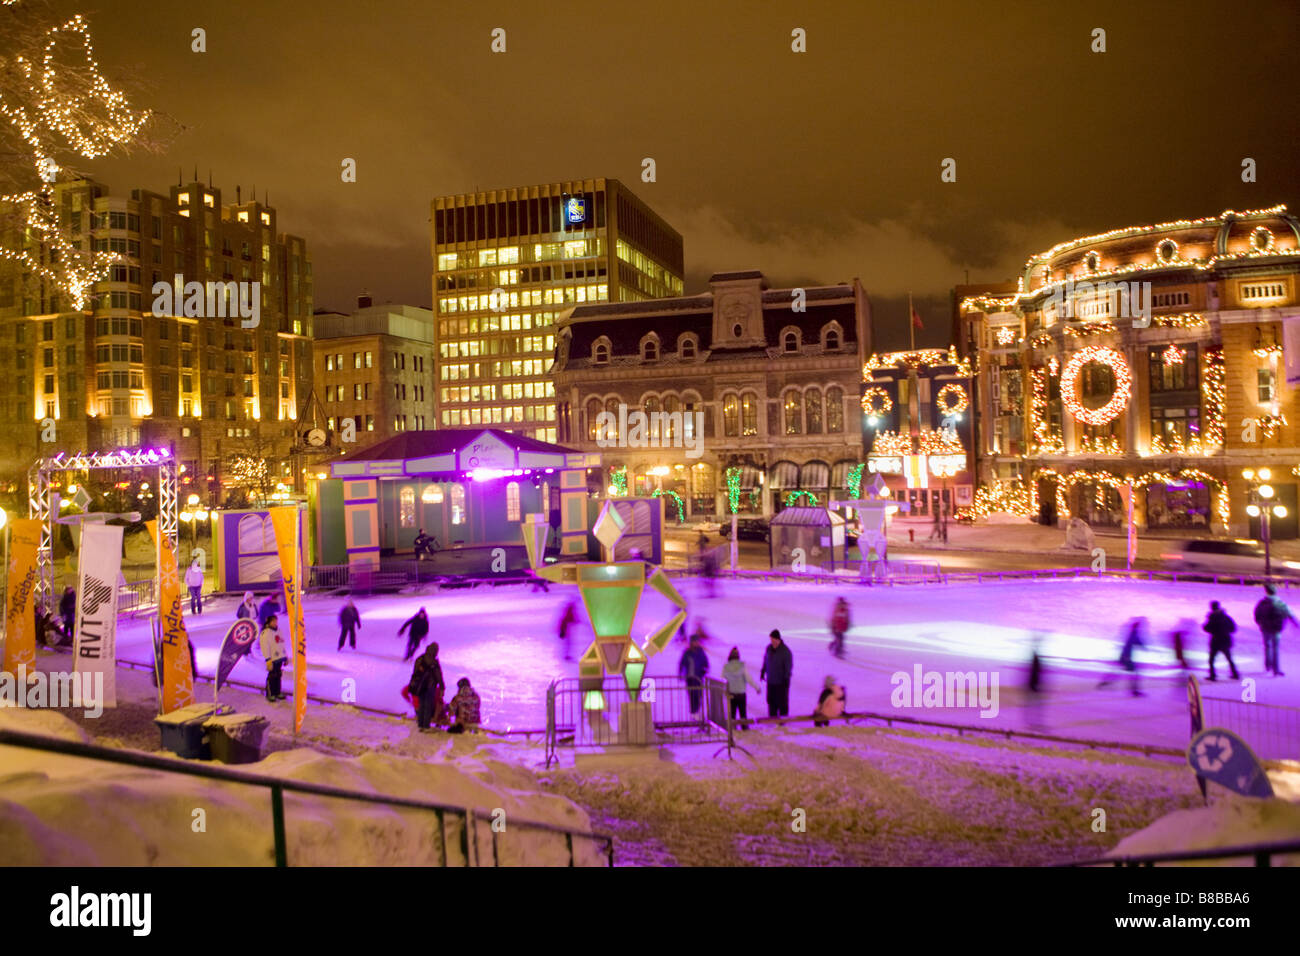 Menschen-Eislaufen in der Nacht, Place Hydro Quebec vor Capitole Theater, Winter-Karneval, Quebec City, Kanada Stockfoto